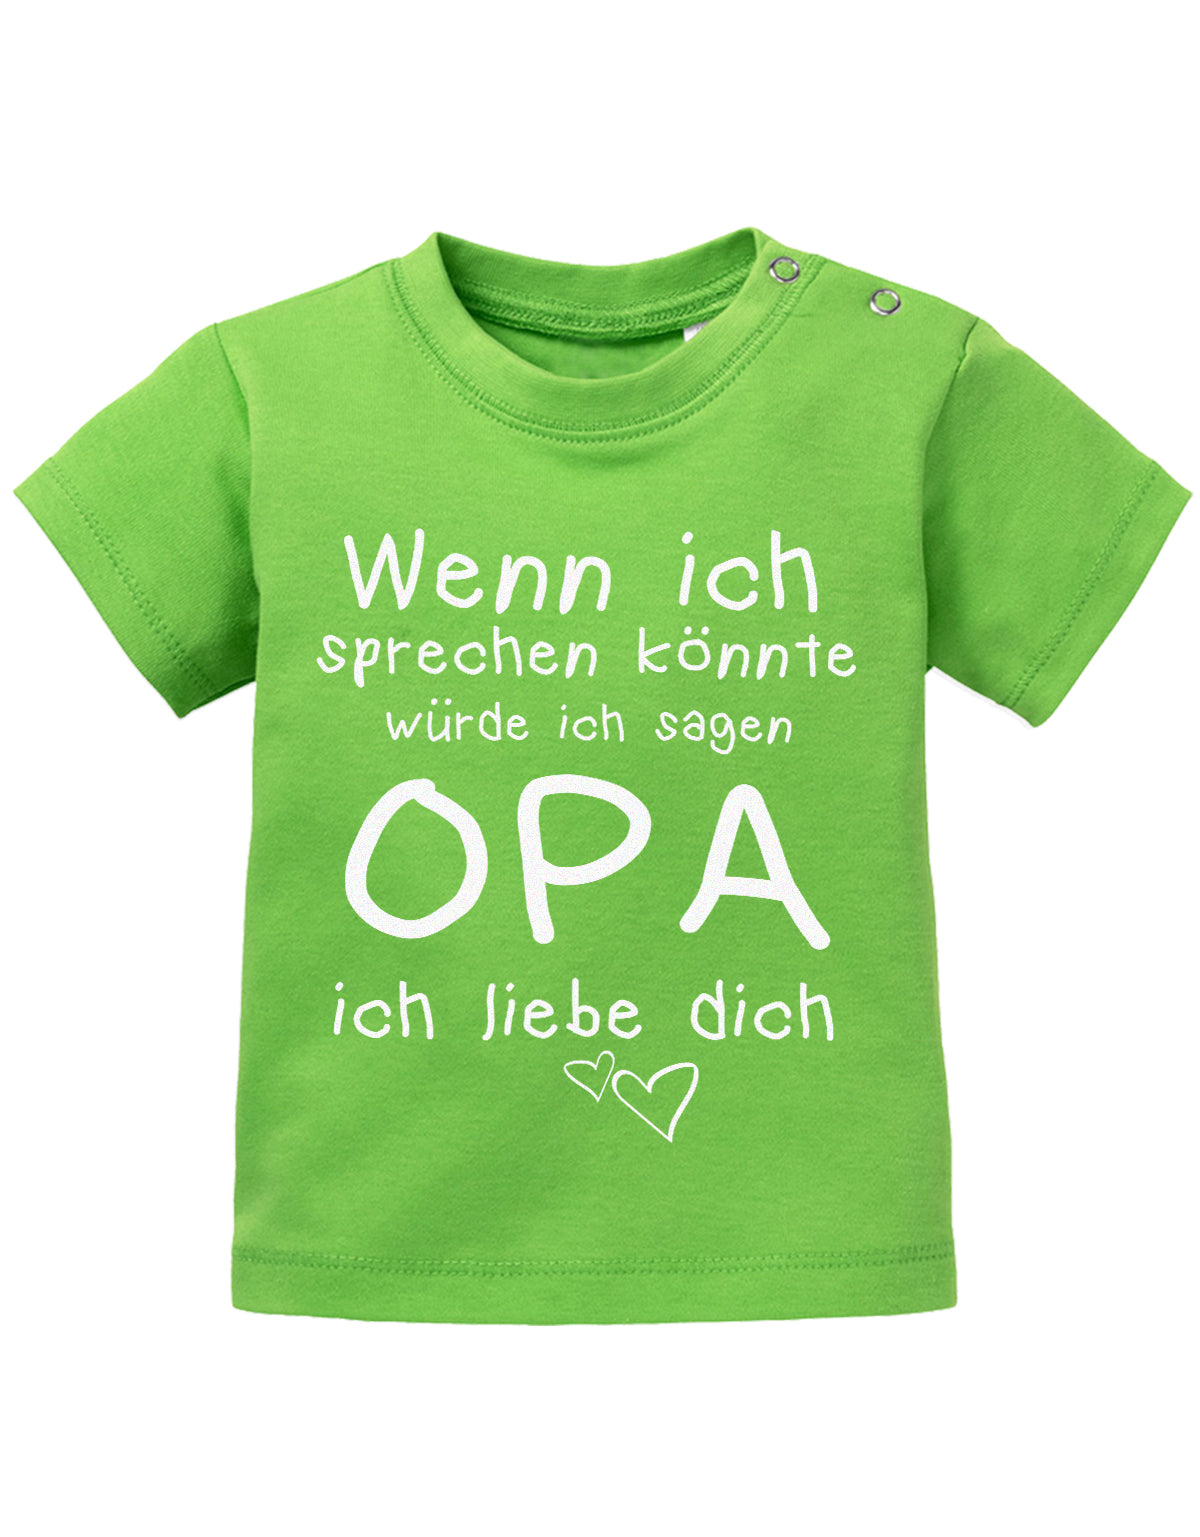 Opa Spruch Baby Shirt. Wenn ich sprechen könnte, würde ich sagen Opa, ich liebe Dich. Grün